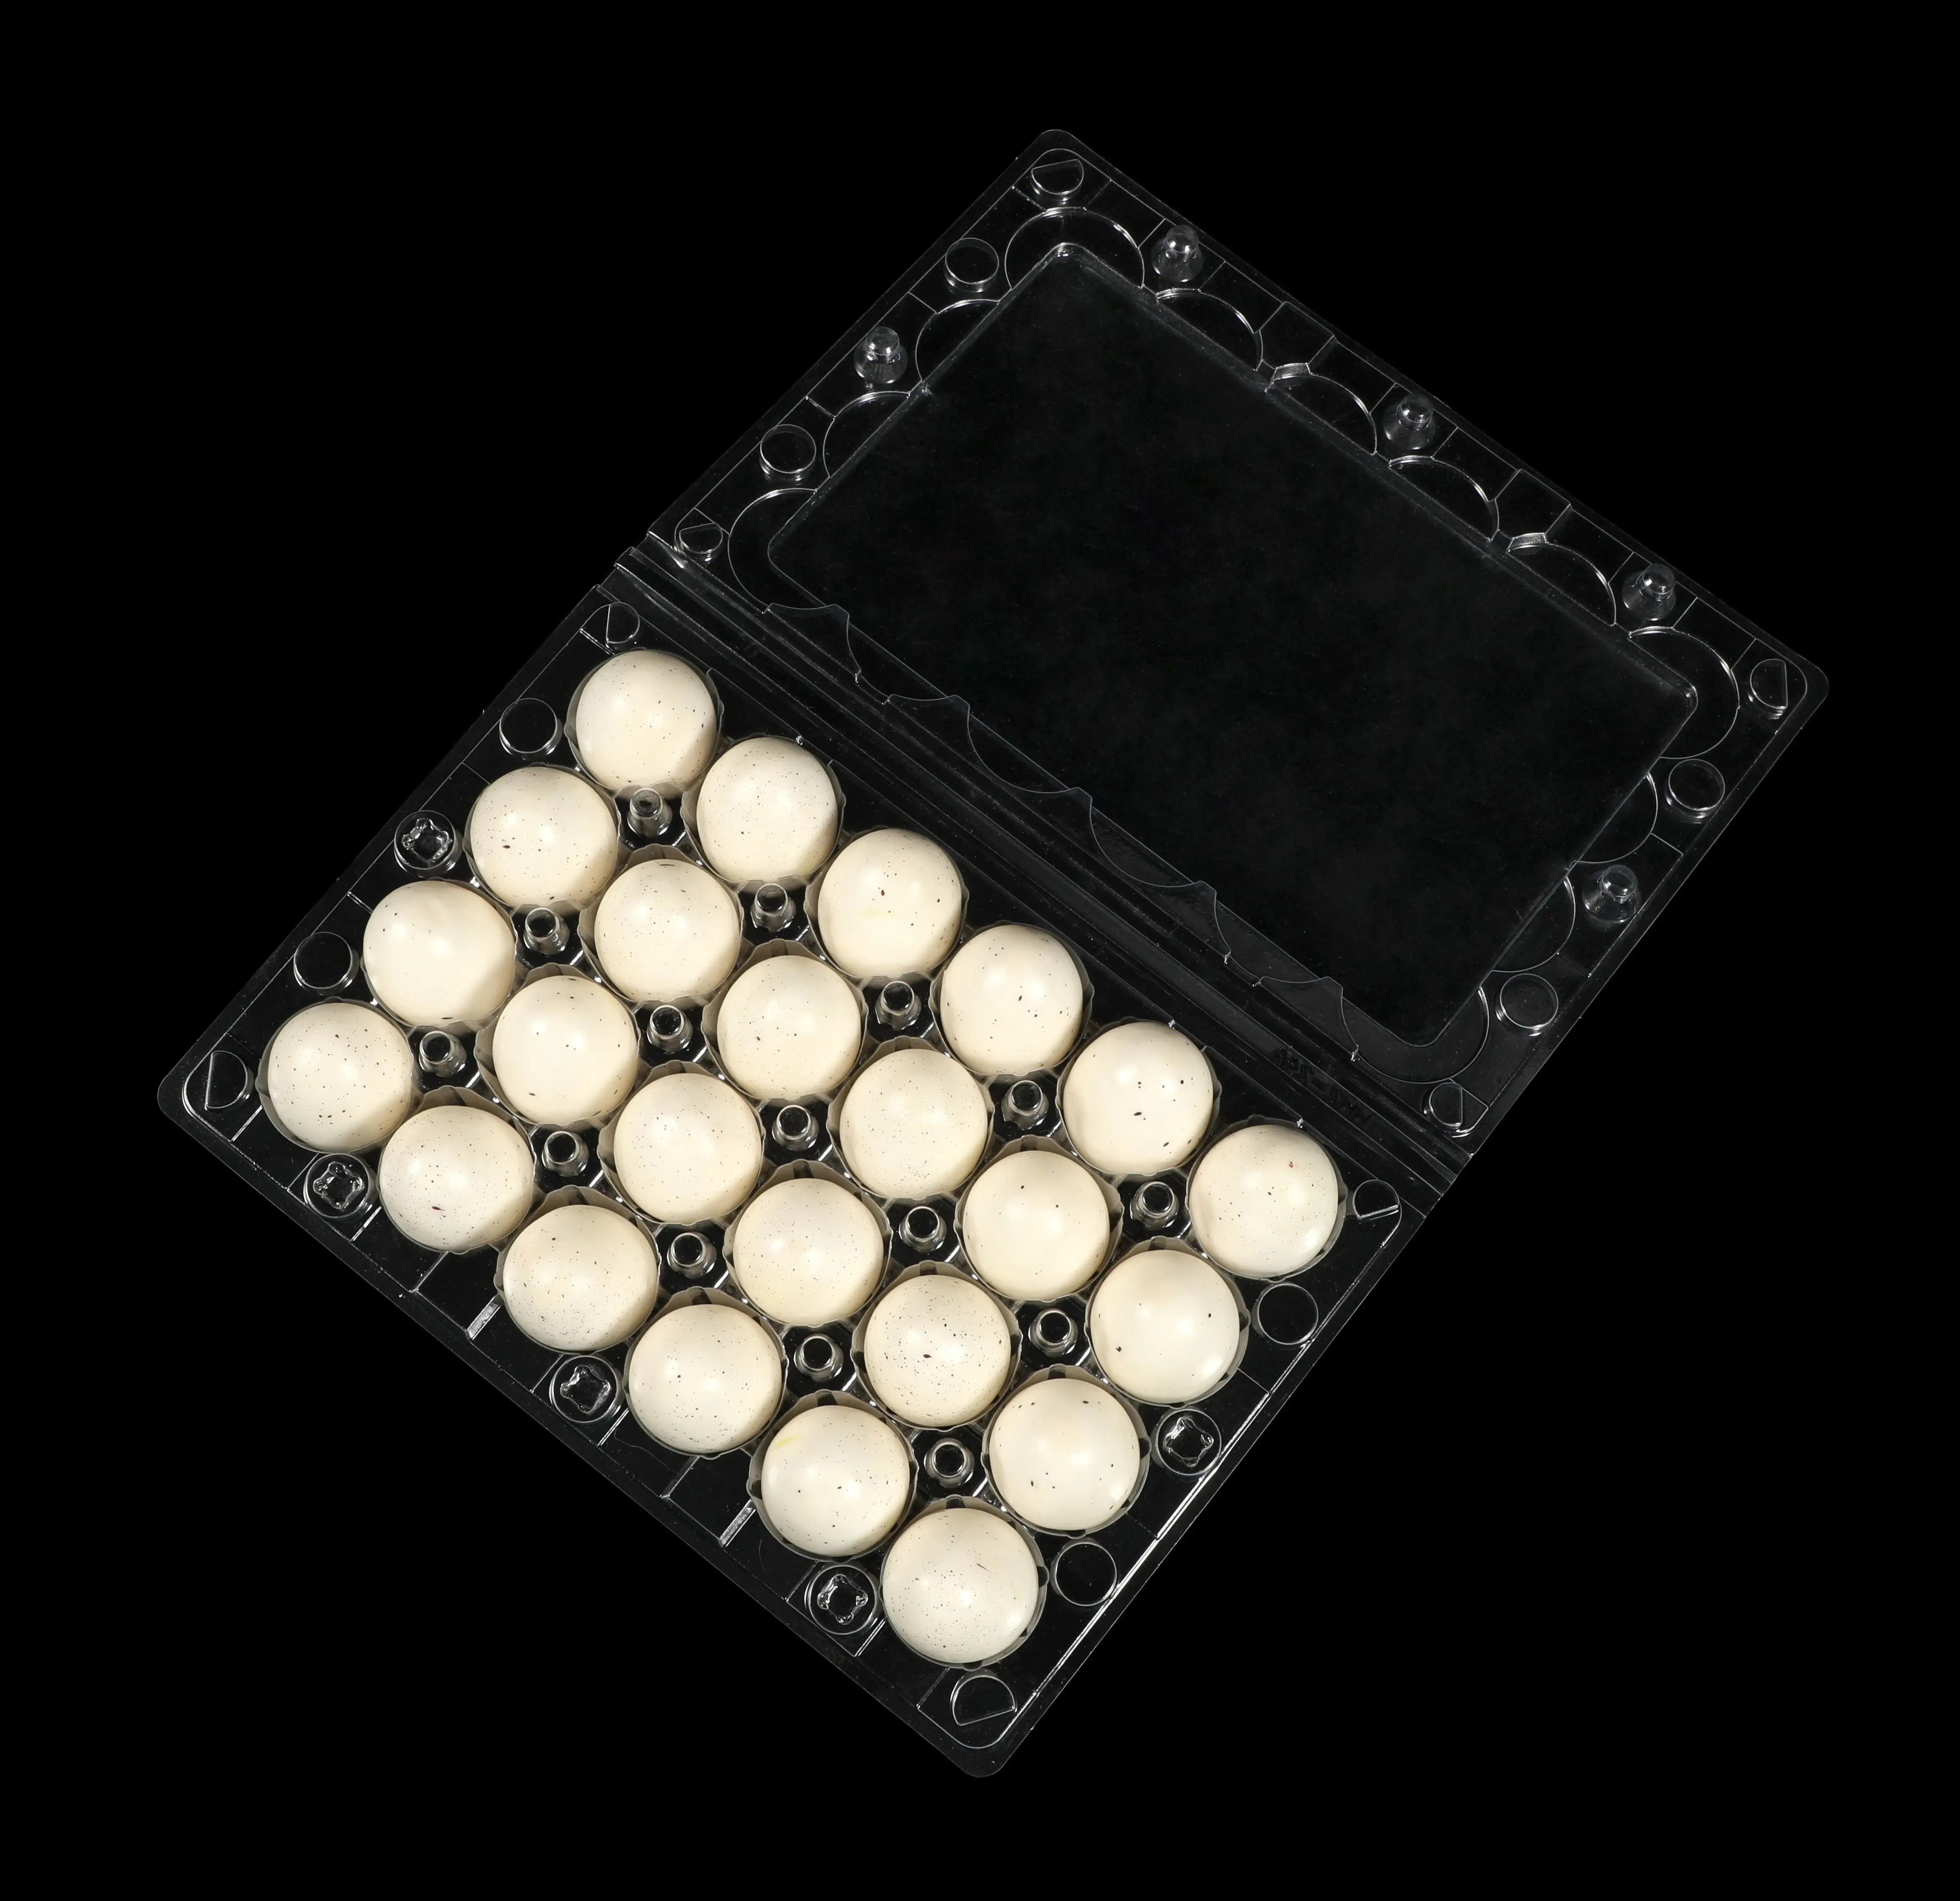 Chất lượng cao 15 20 lỗ chim cút trứng Carton Đóng gói hộp rõ ràng nhựa khay trứng bao bì cho chim cút gà